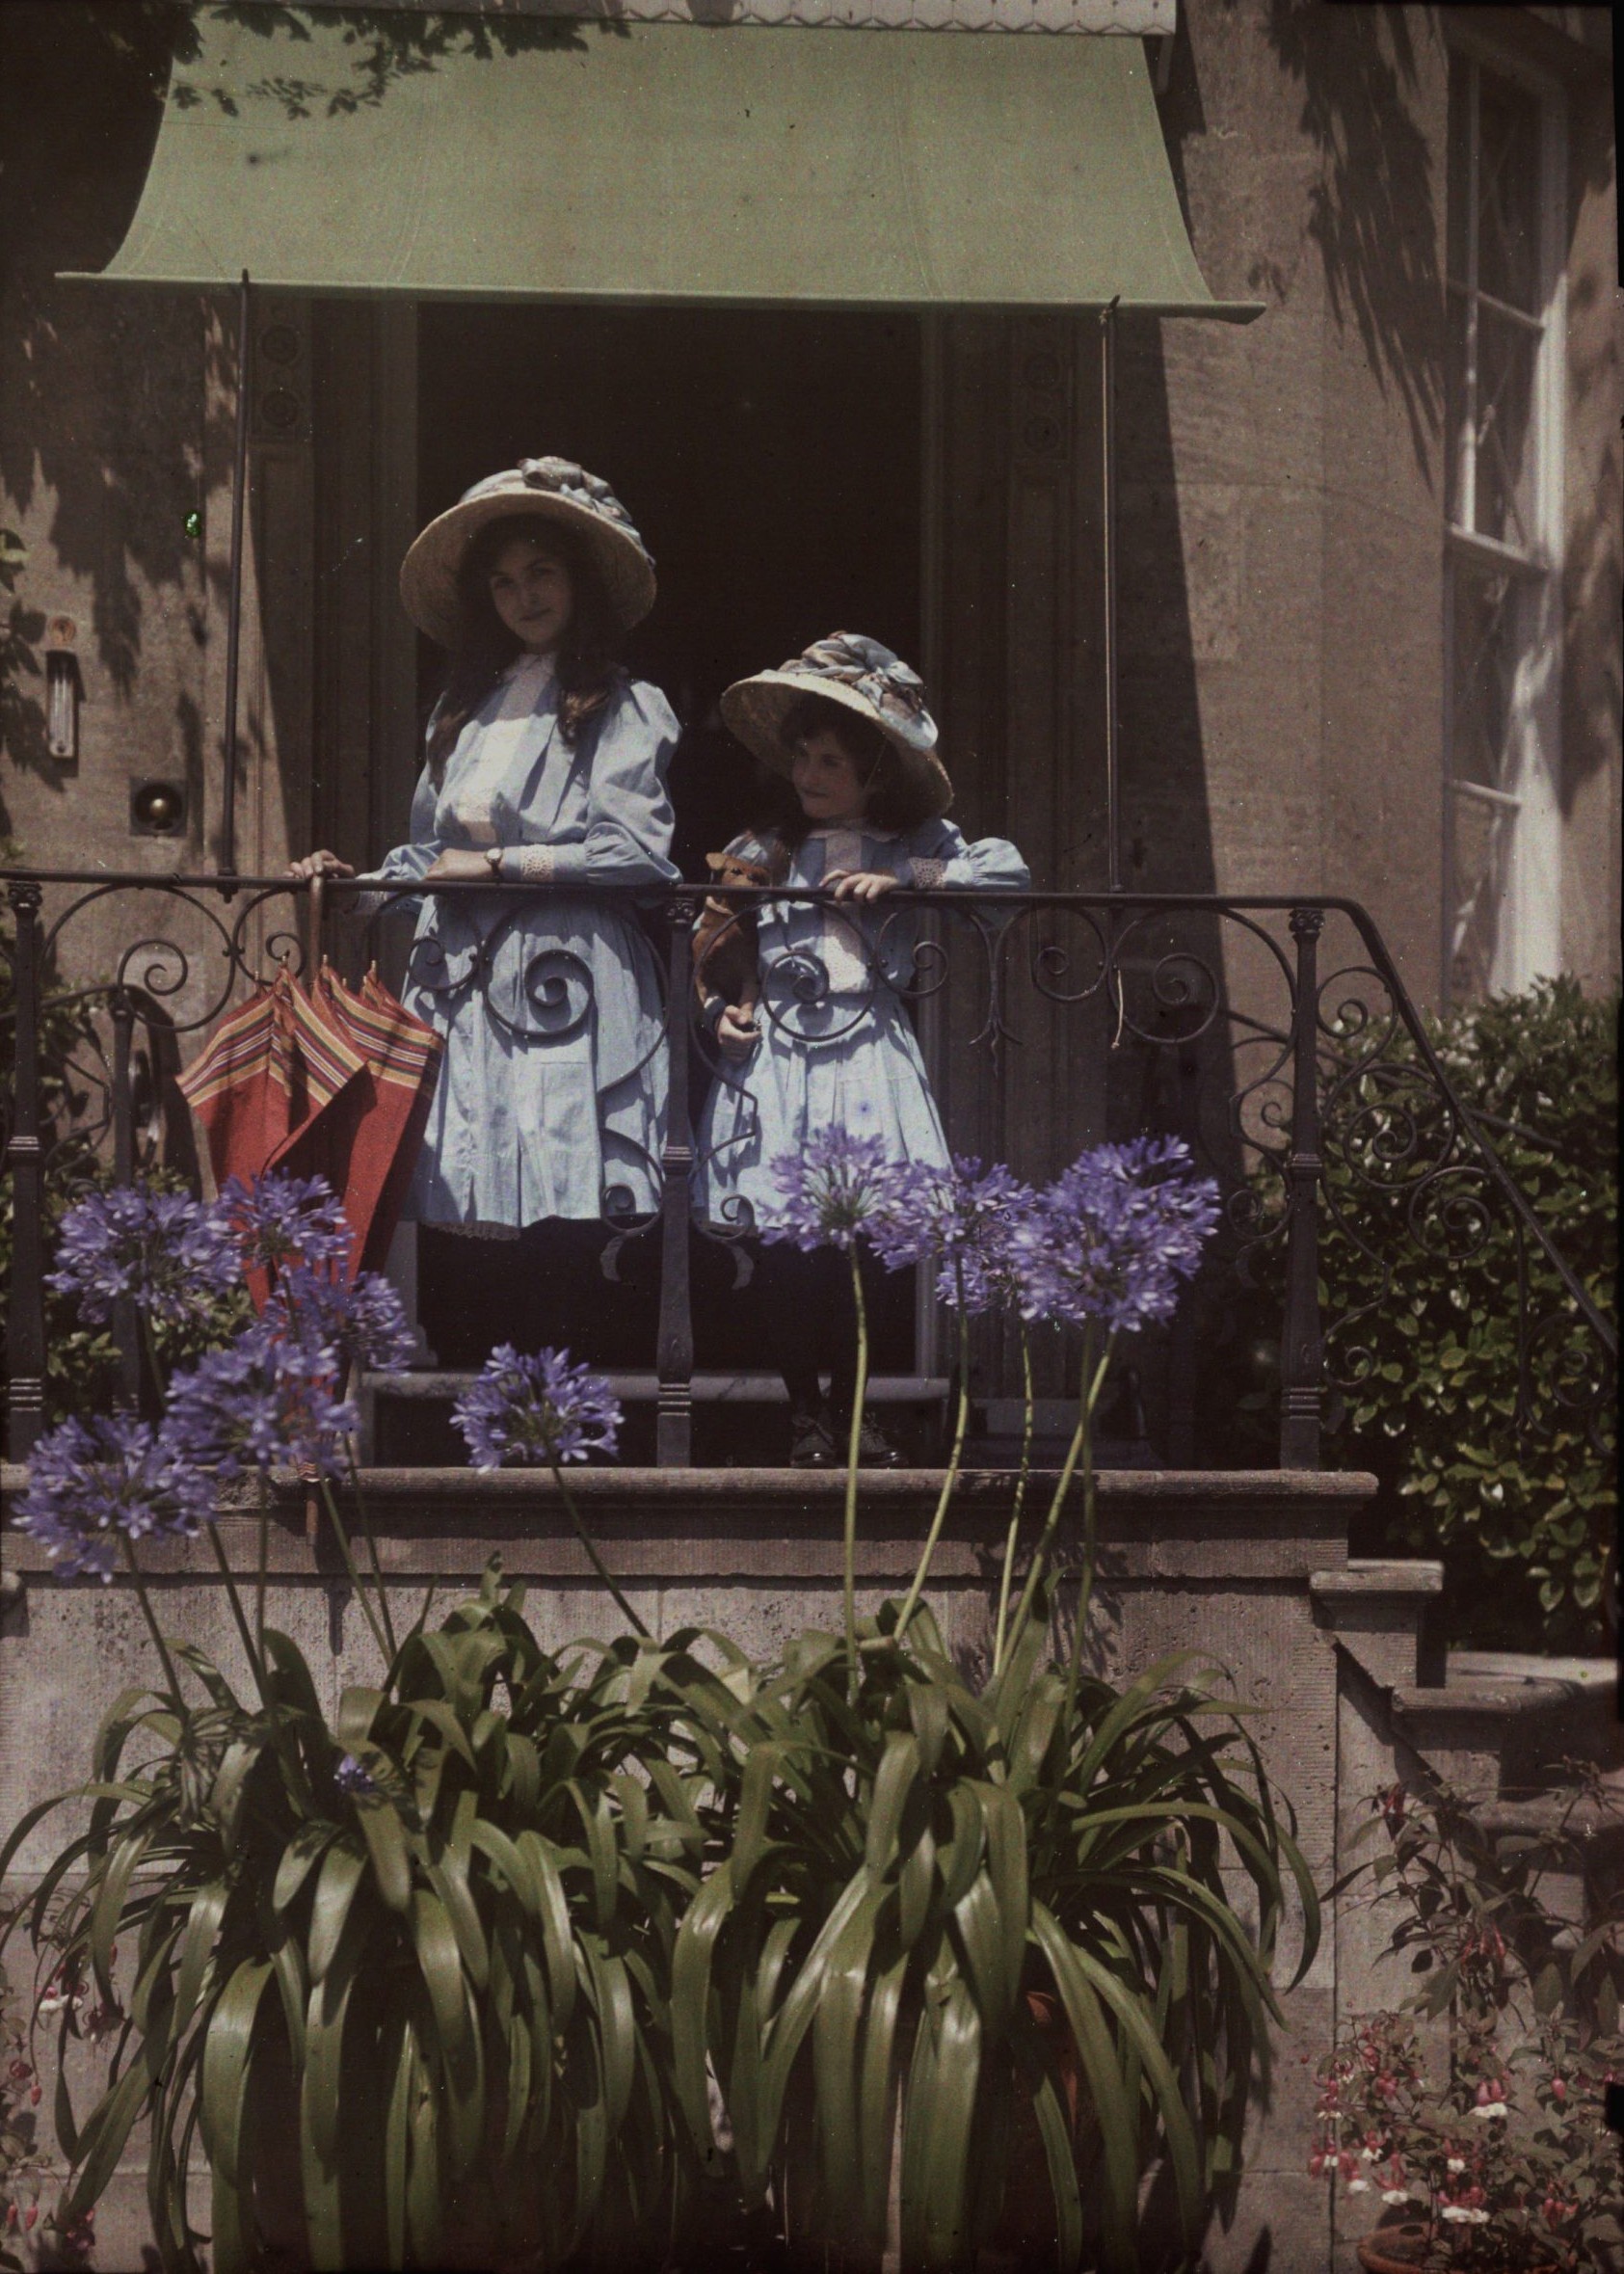 Сёстры на балконе, ок. 1910. Автохром, фотограф Этельреда Джанет Лэйнг